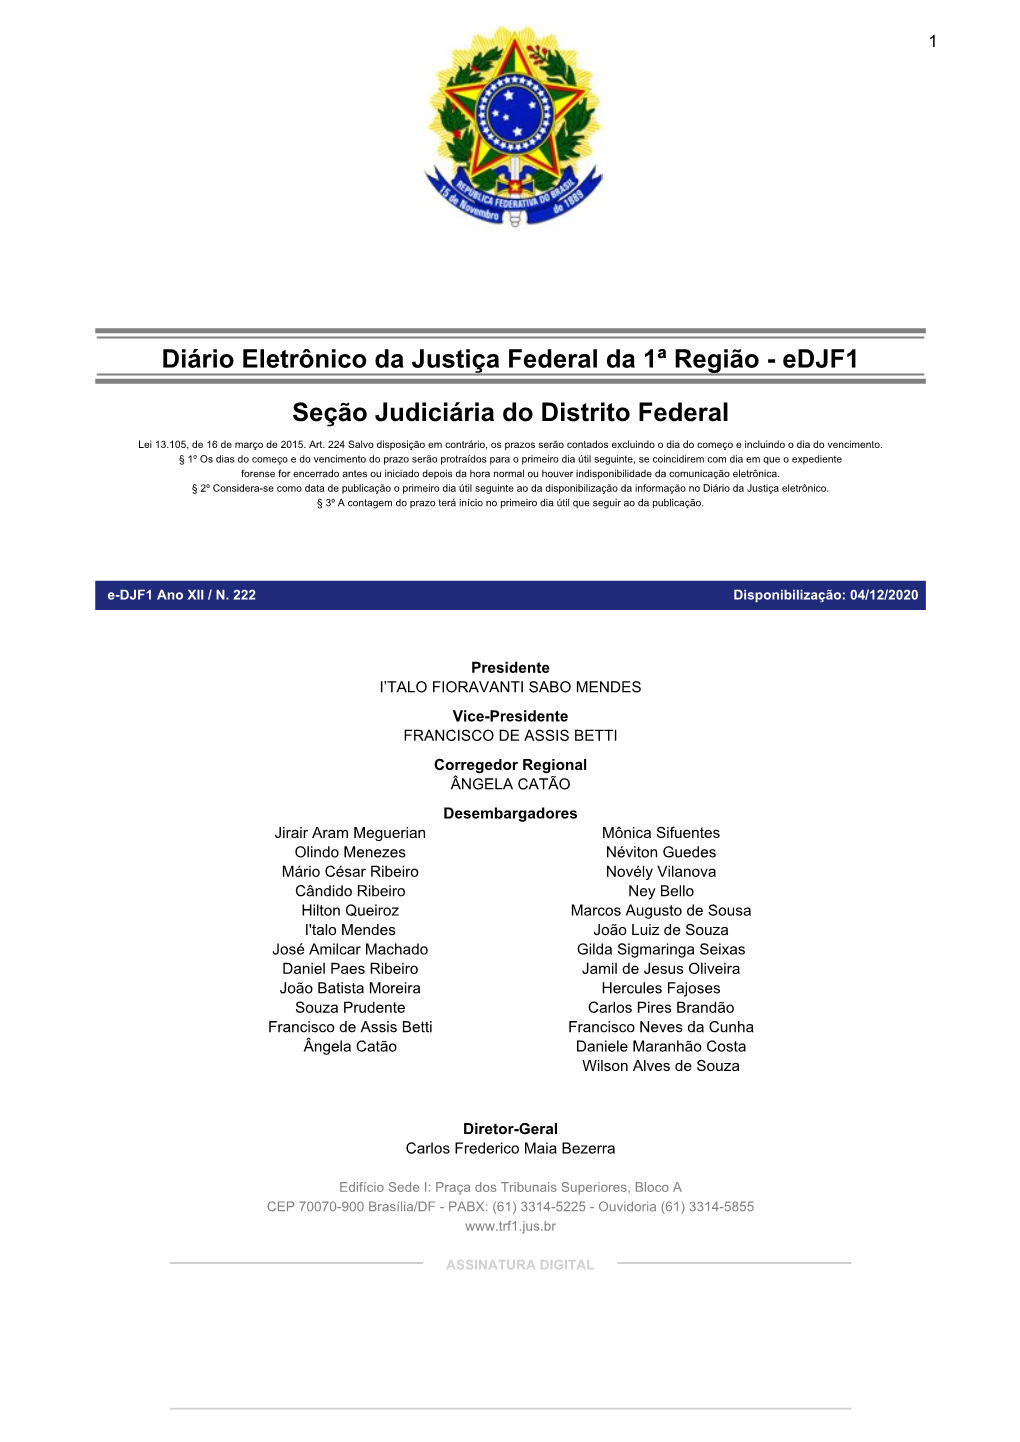 Diário Eletrônico Da Justiça Federal Da 1ª Região - Edjf1